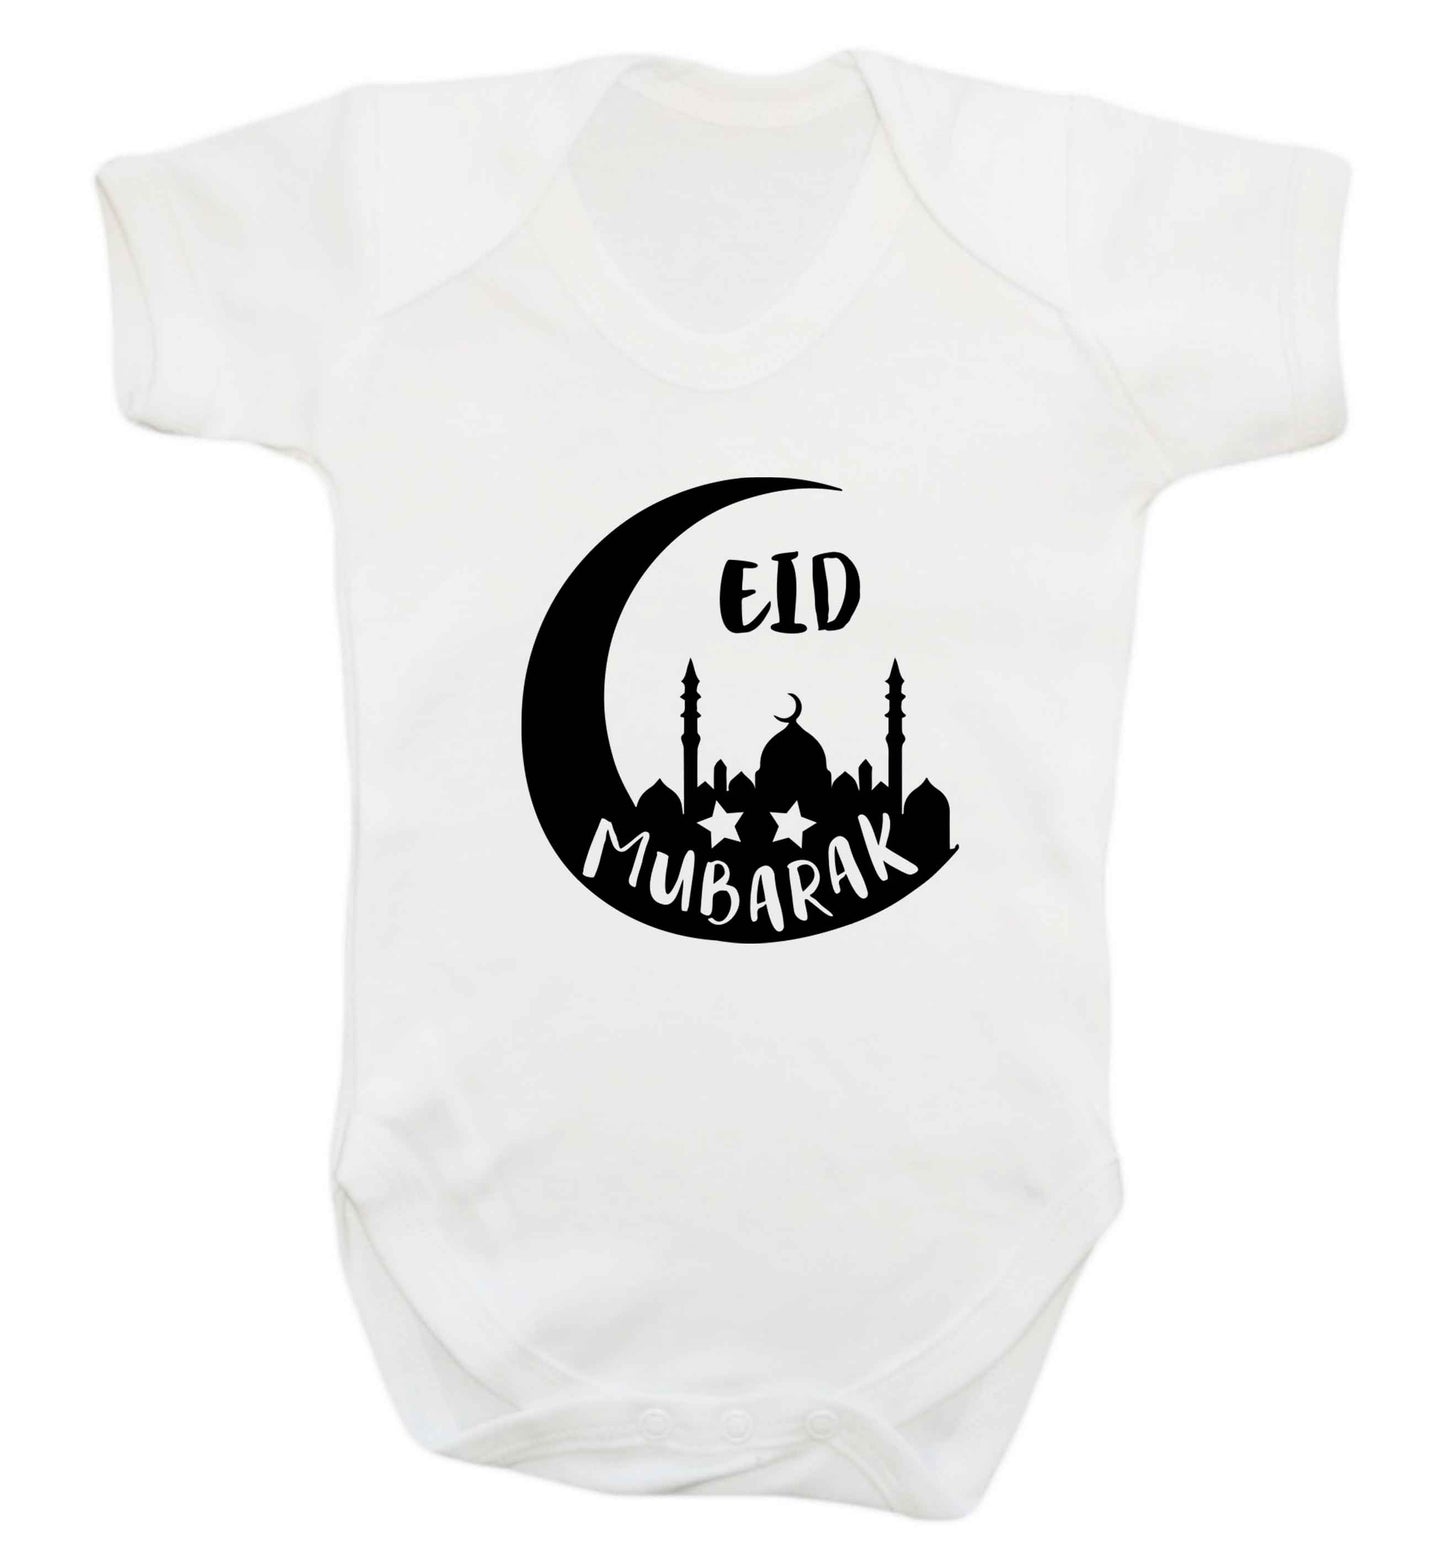 Eid mubarak baby vest white 18-24 months